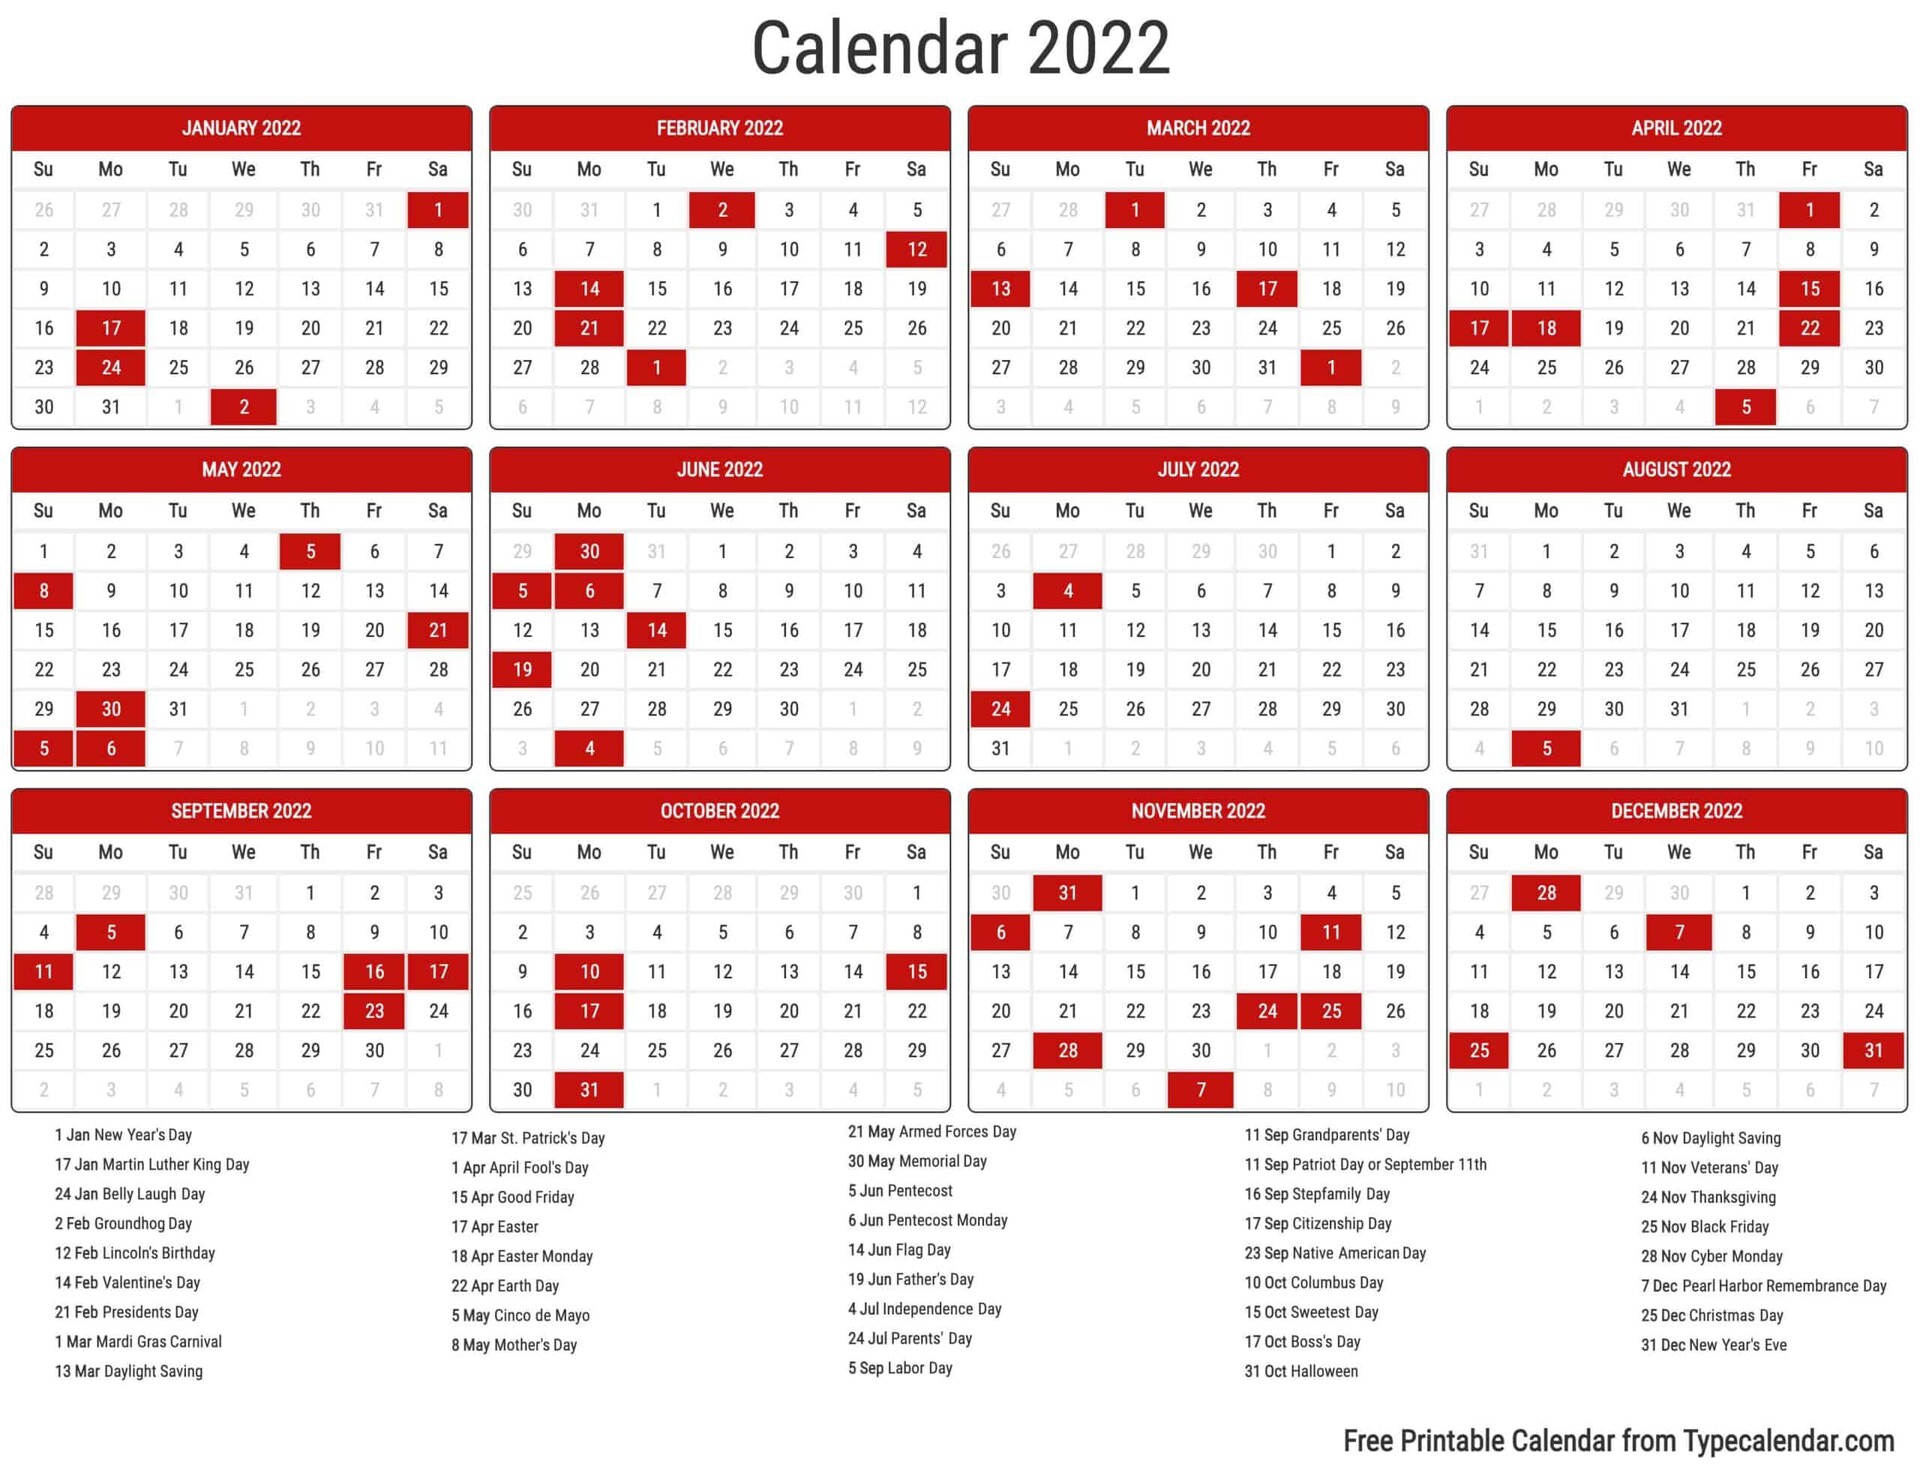 Calendar 2022 May 2022